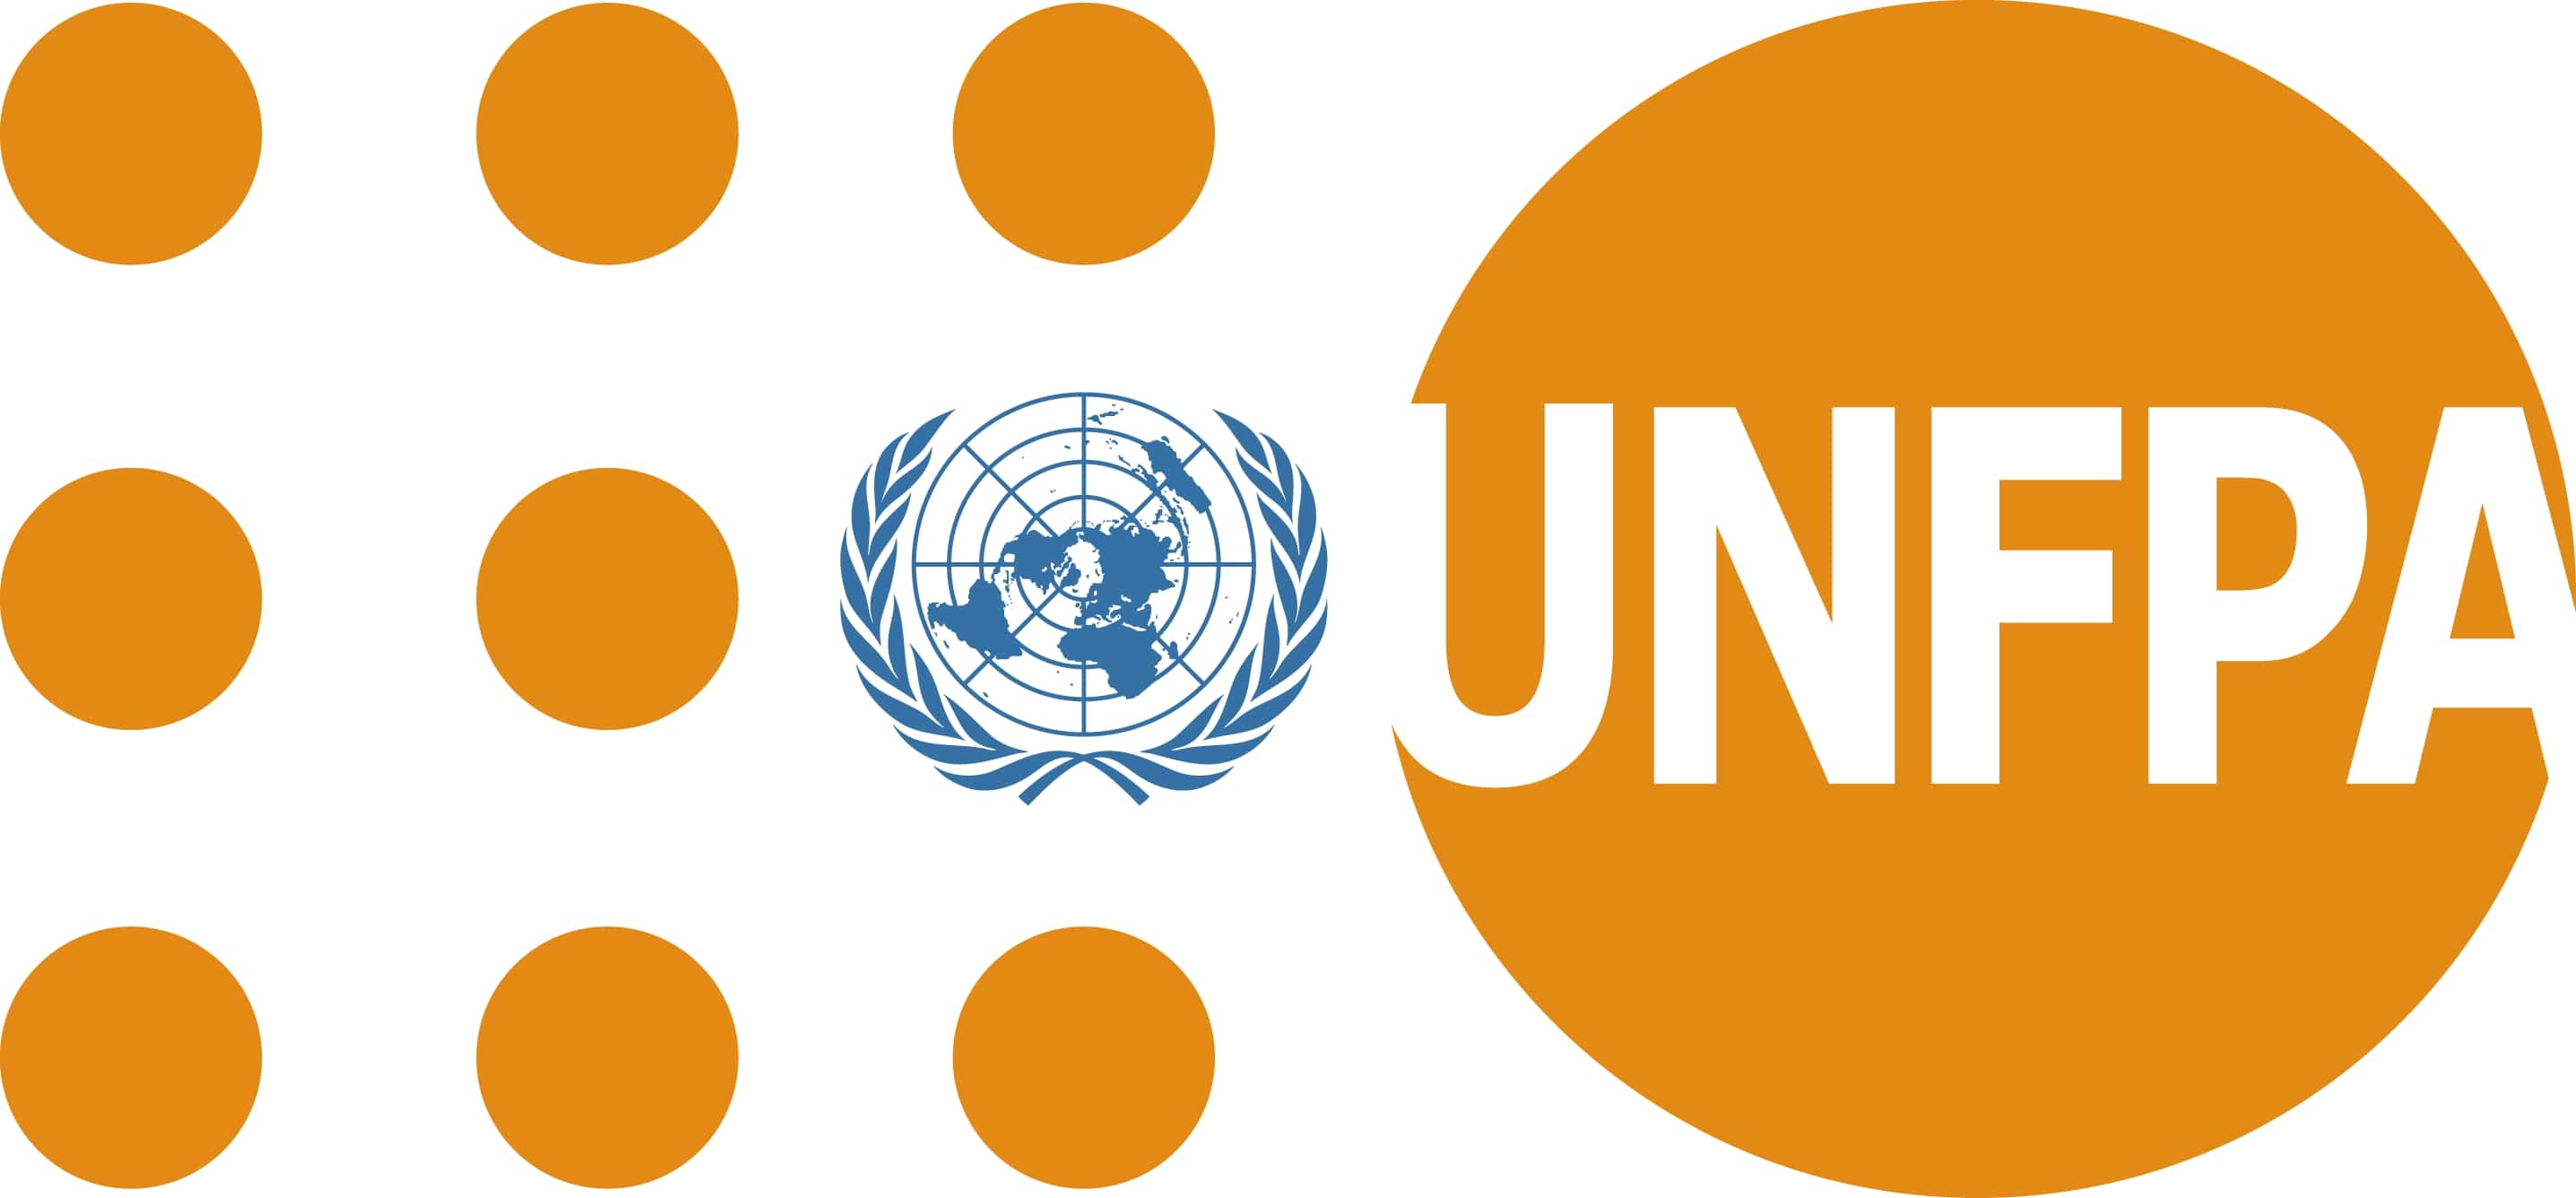 زين الأردن وصندوق الأمم المتحدة للسكانUNFPA”& يتعاونان لتطوير خطة التنمية المُستدامة لعام 2030